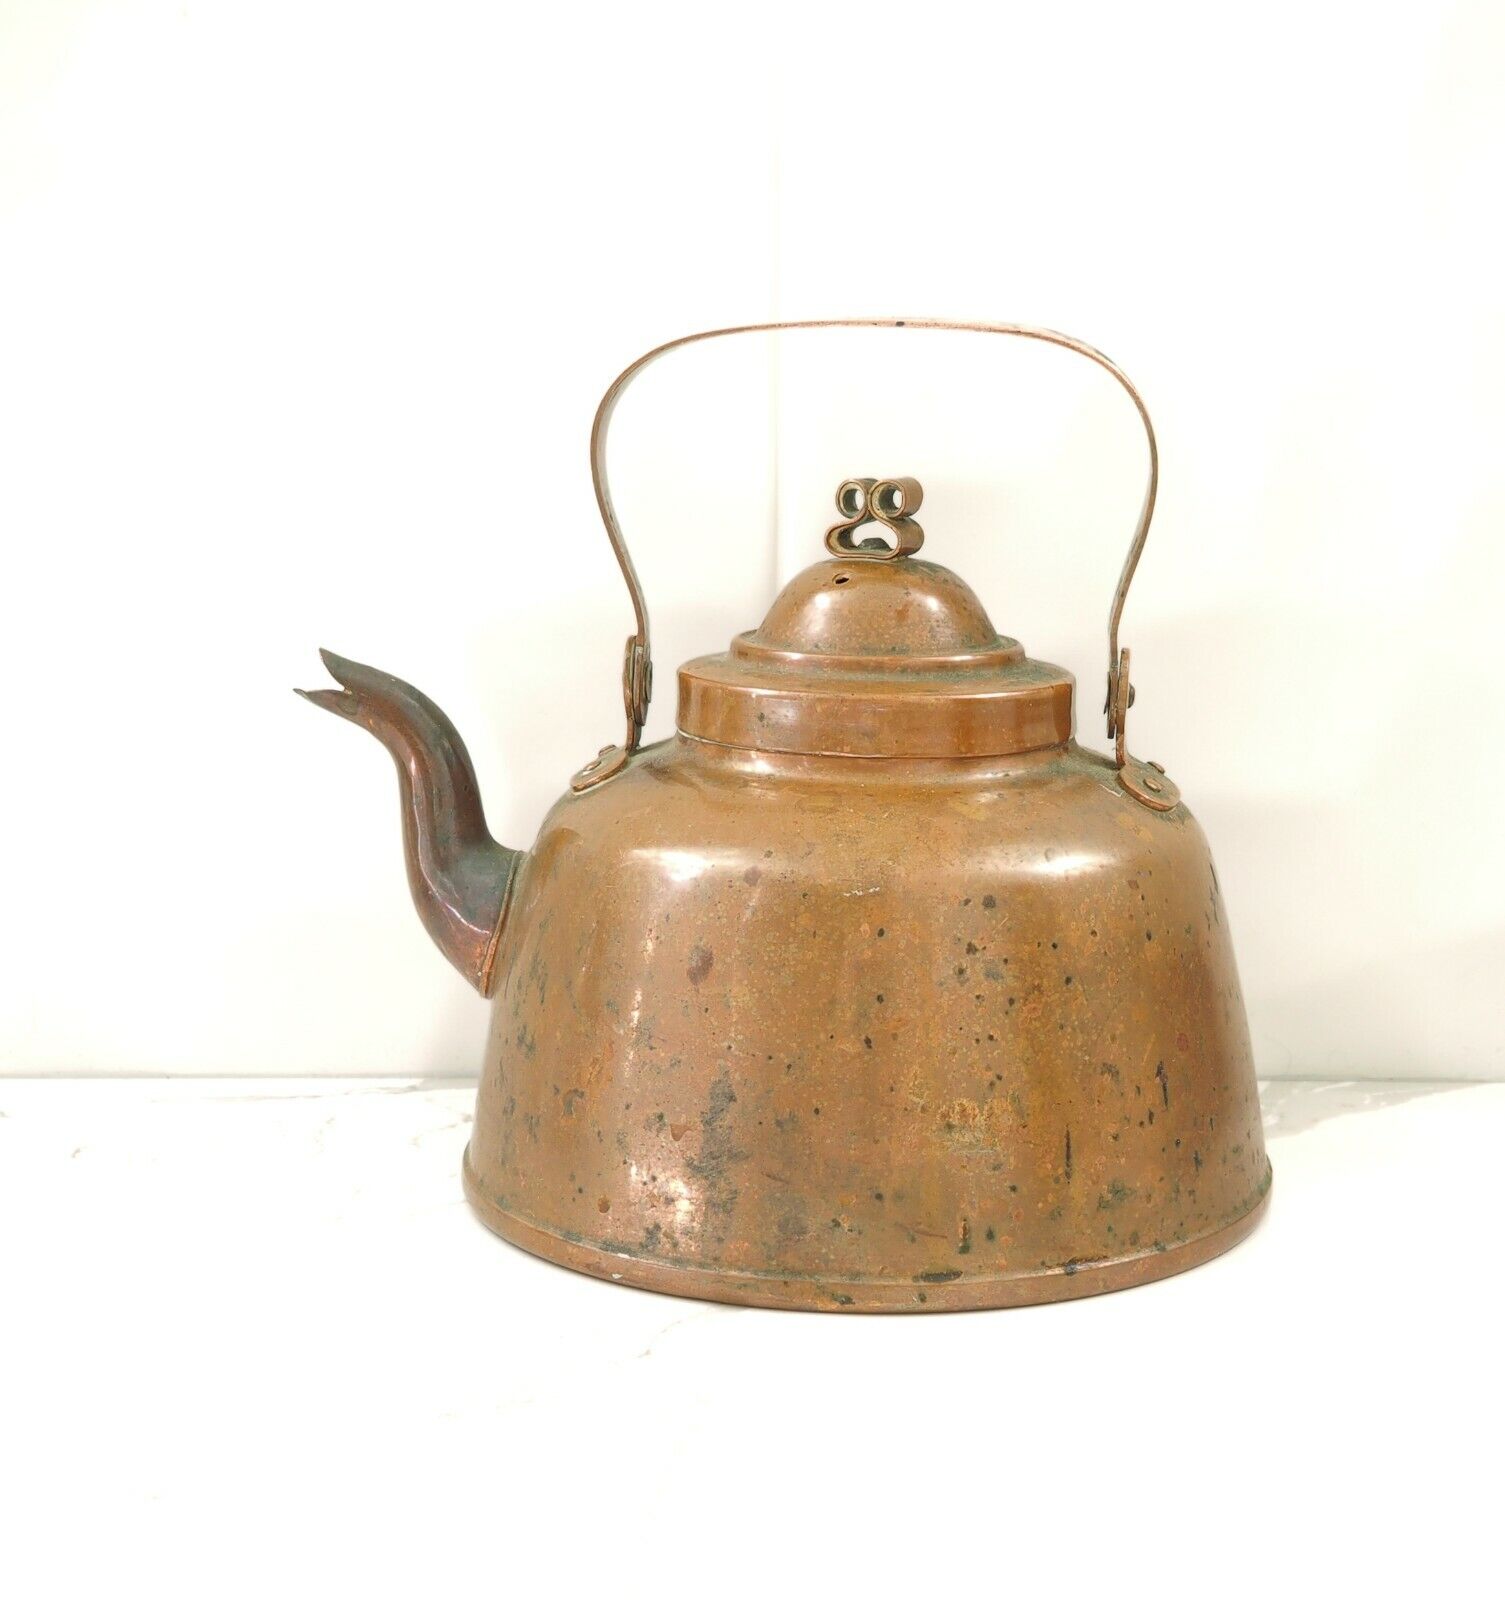 Antique copper tea kettle marked J & CG Bolinder Stockholm  circa 1844-1892